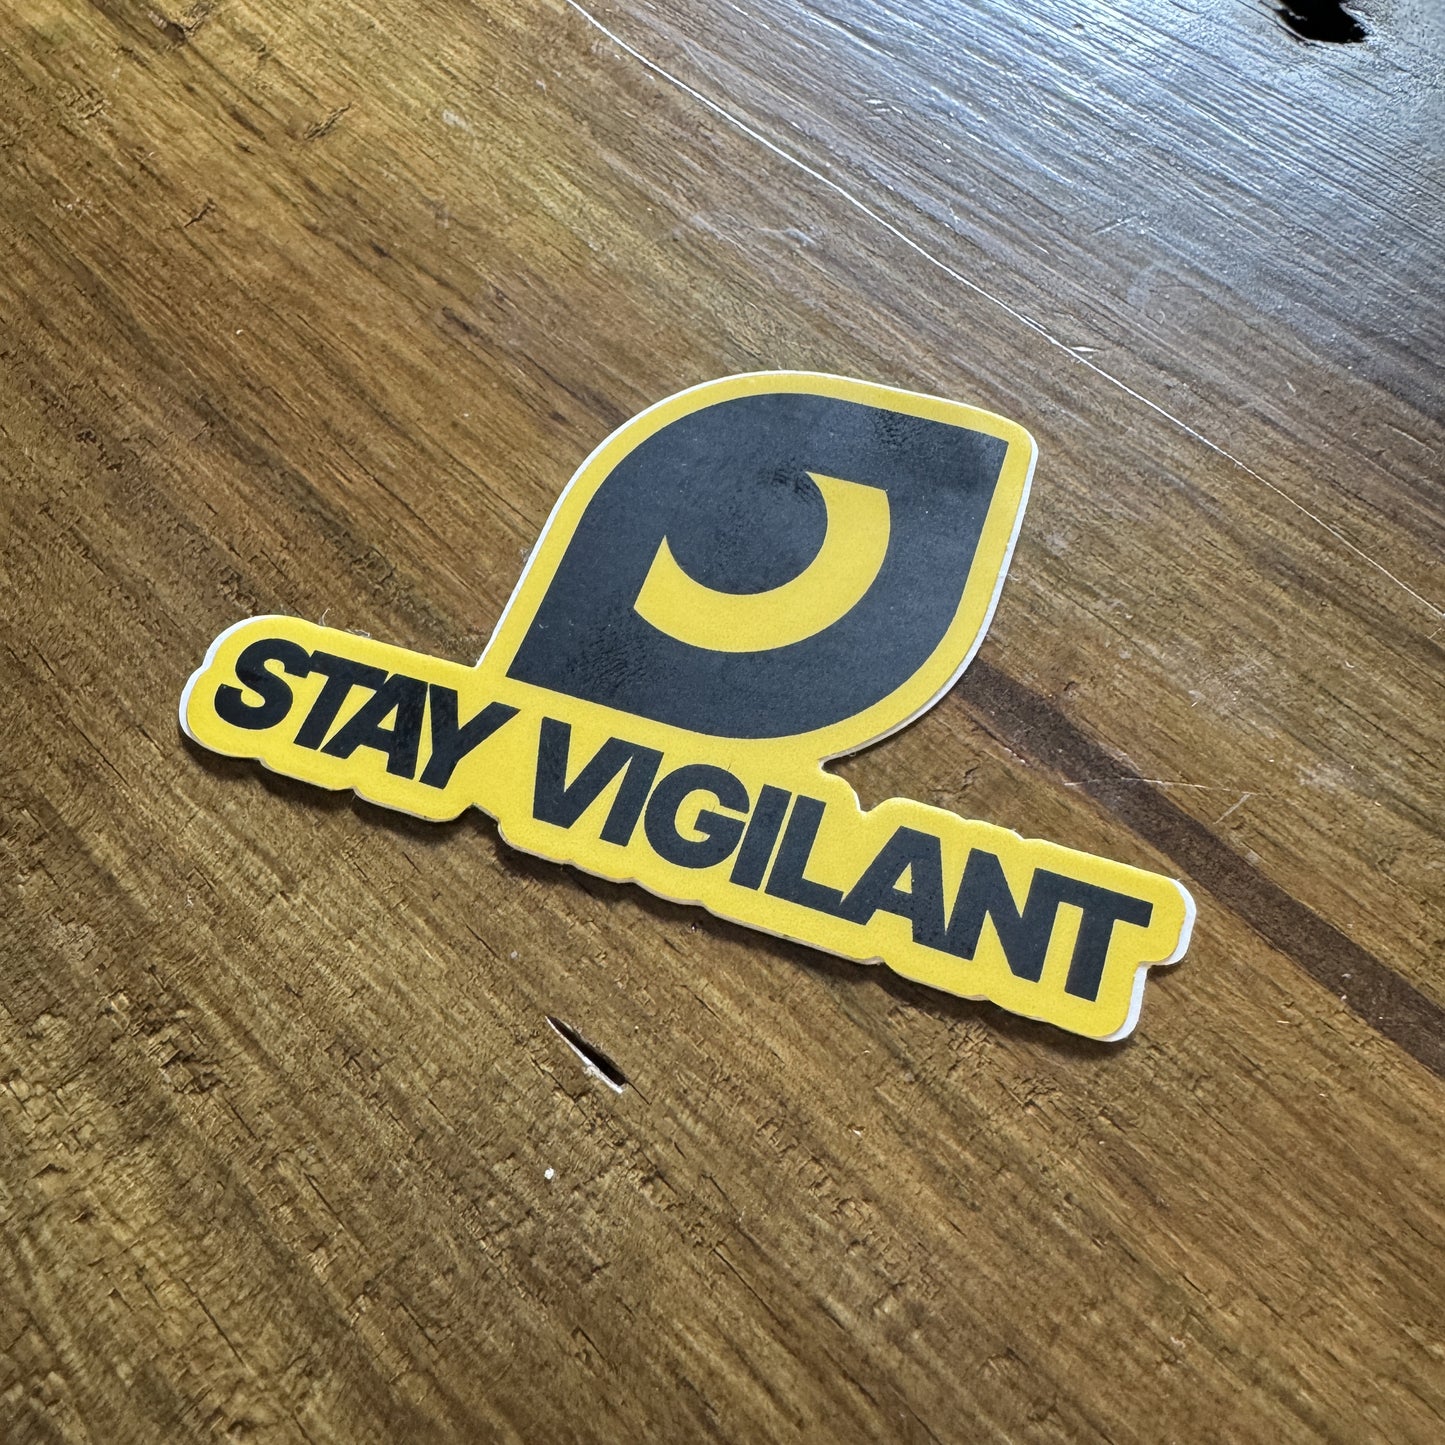 Stay Vigilant Logo Sticker